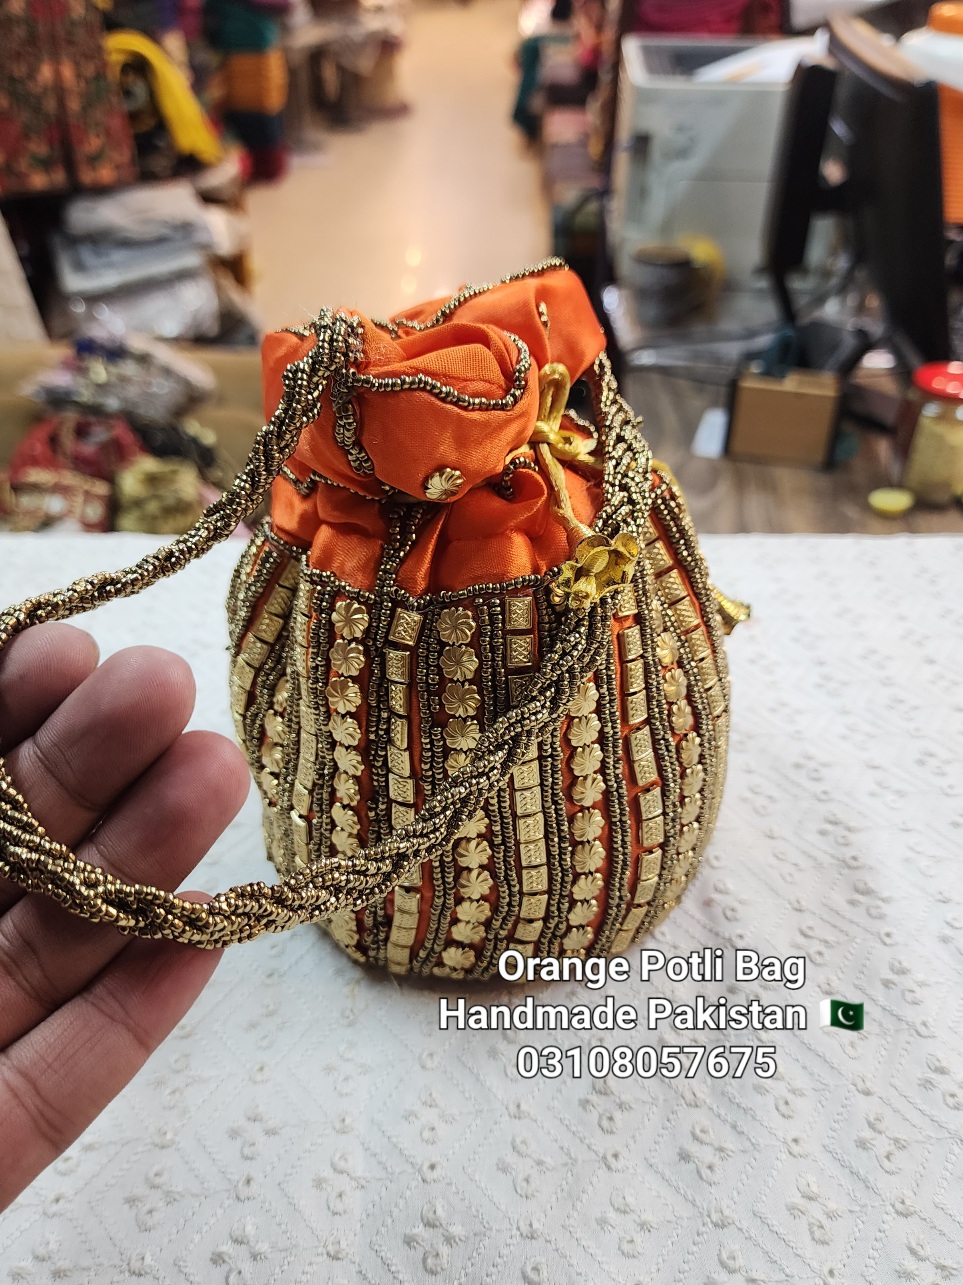 Selling Handmade Bags: The Behind-The-Scenes Experience Of Real Kiwi B –  Kiwi Bagineers